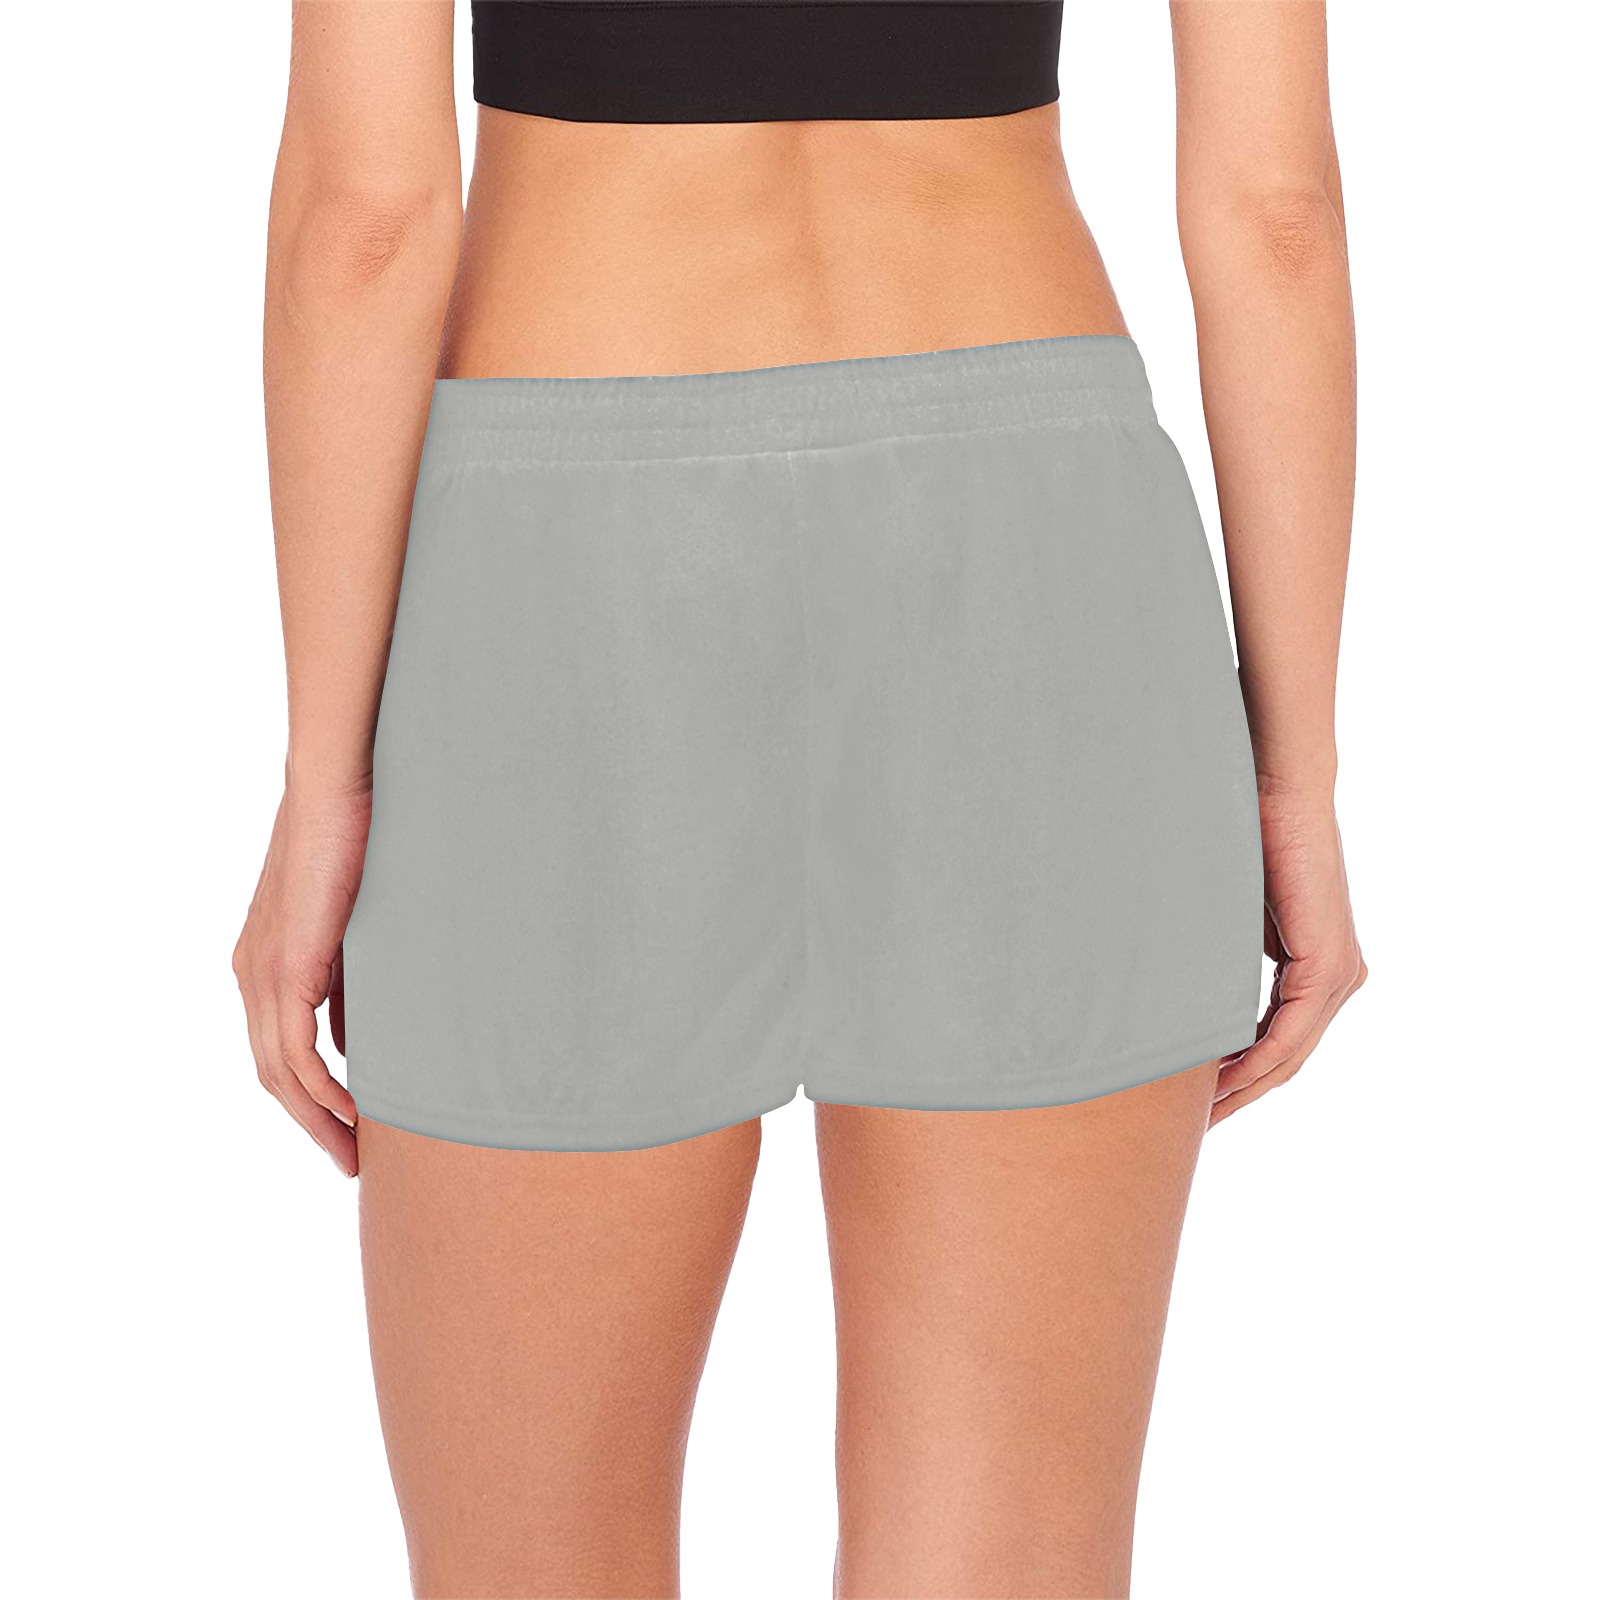 Shorts gray with single logo Women's Pajama Shorts